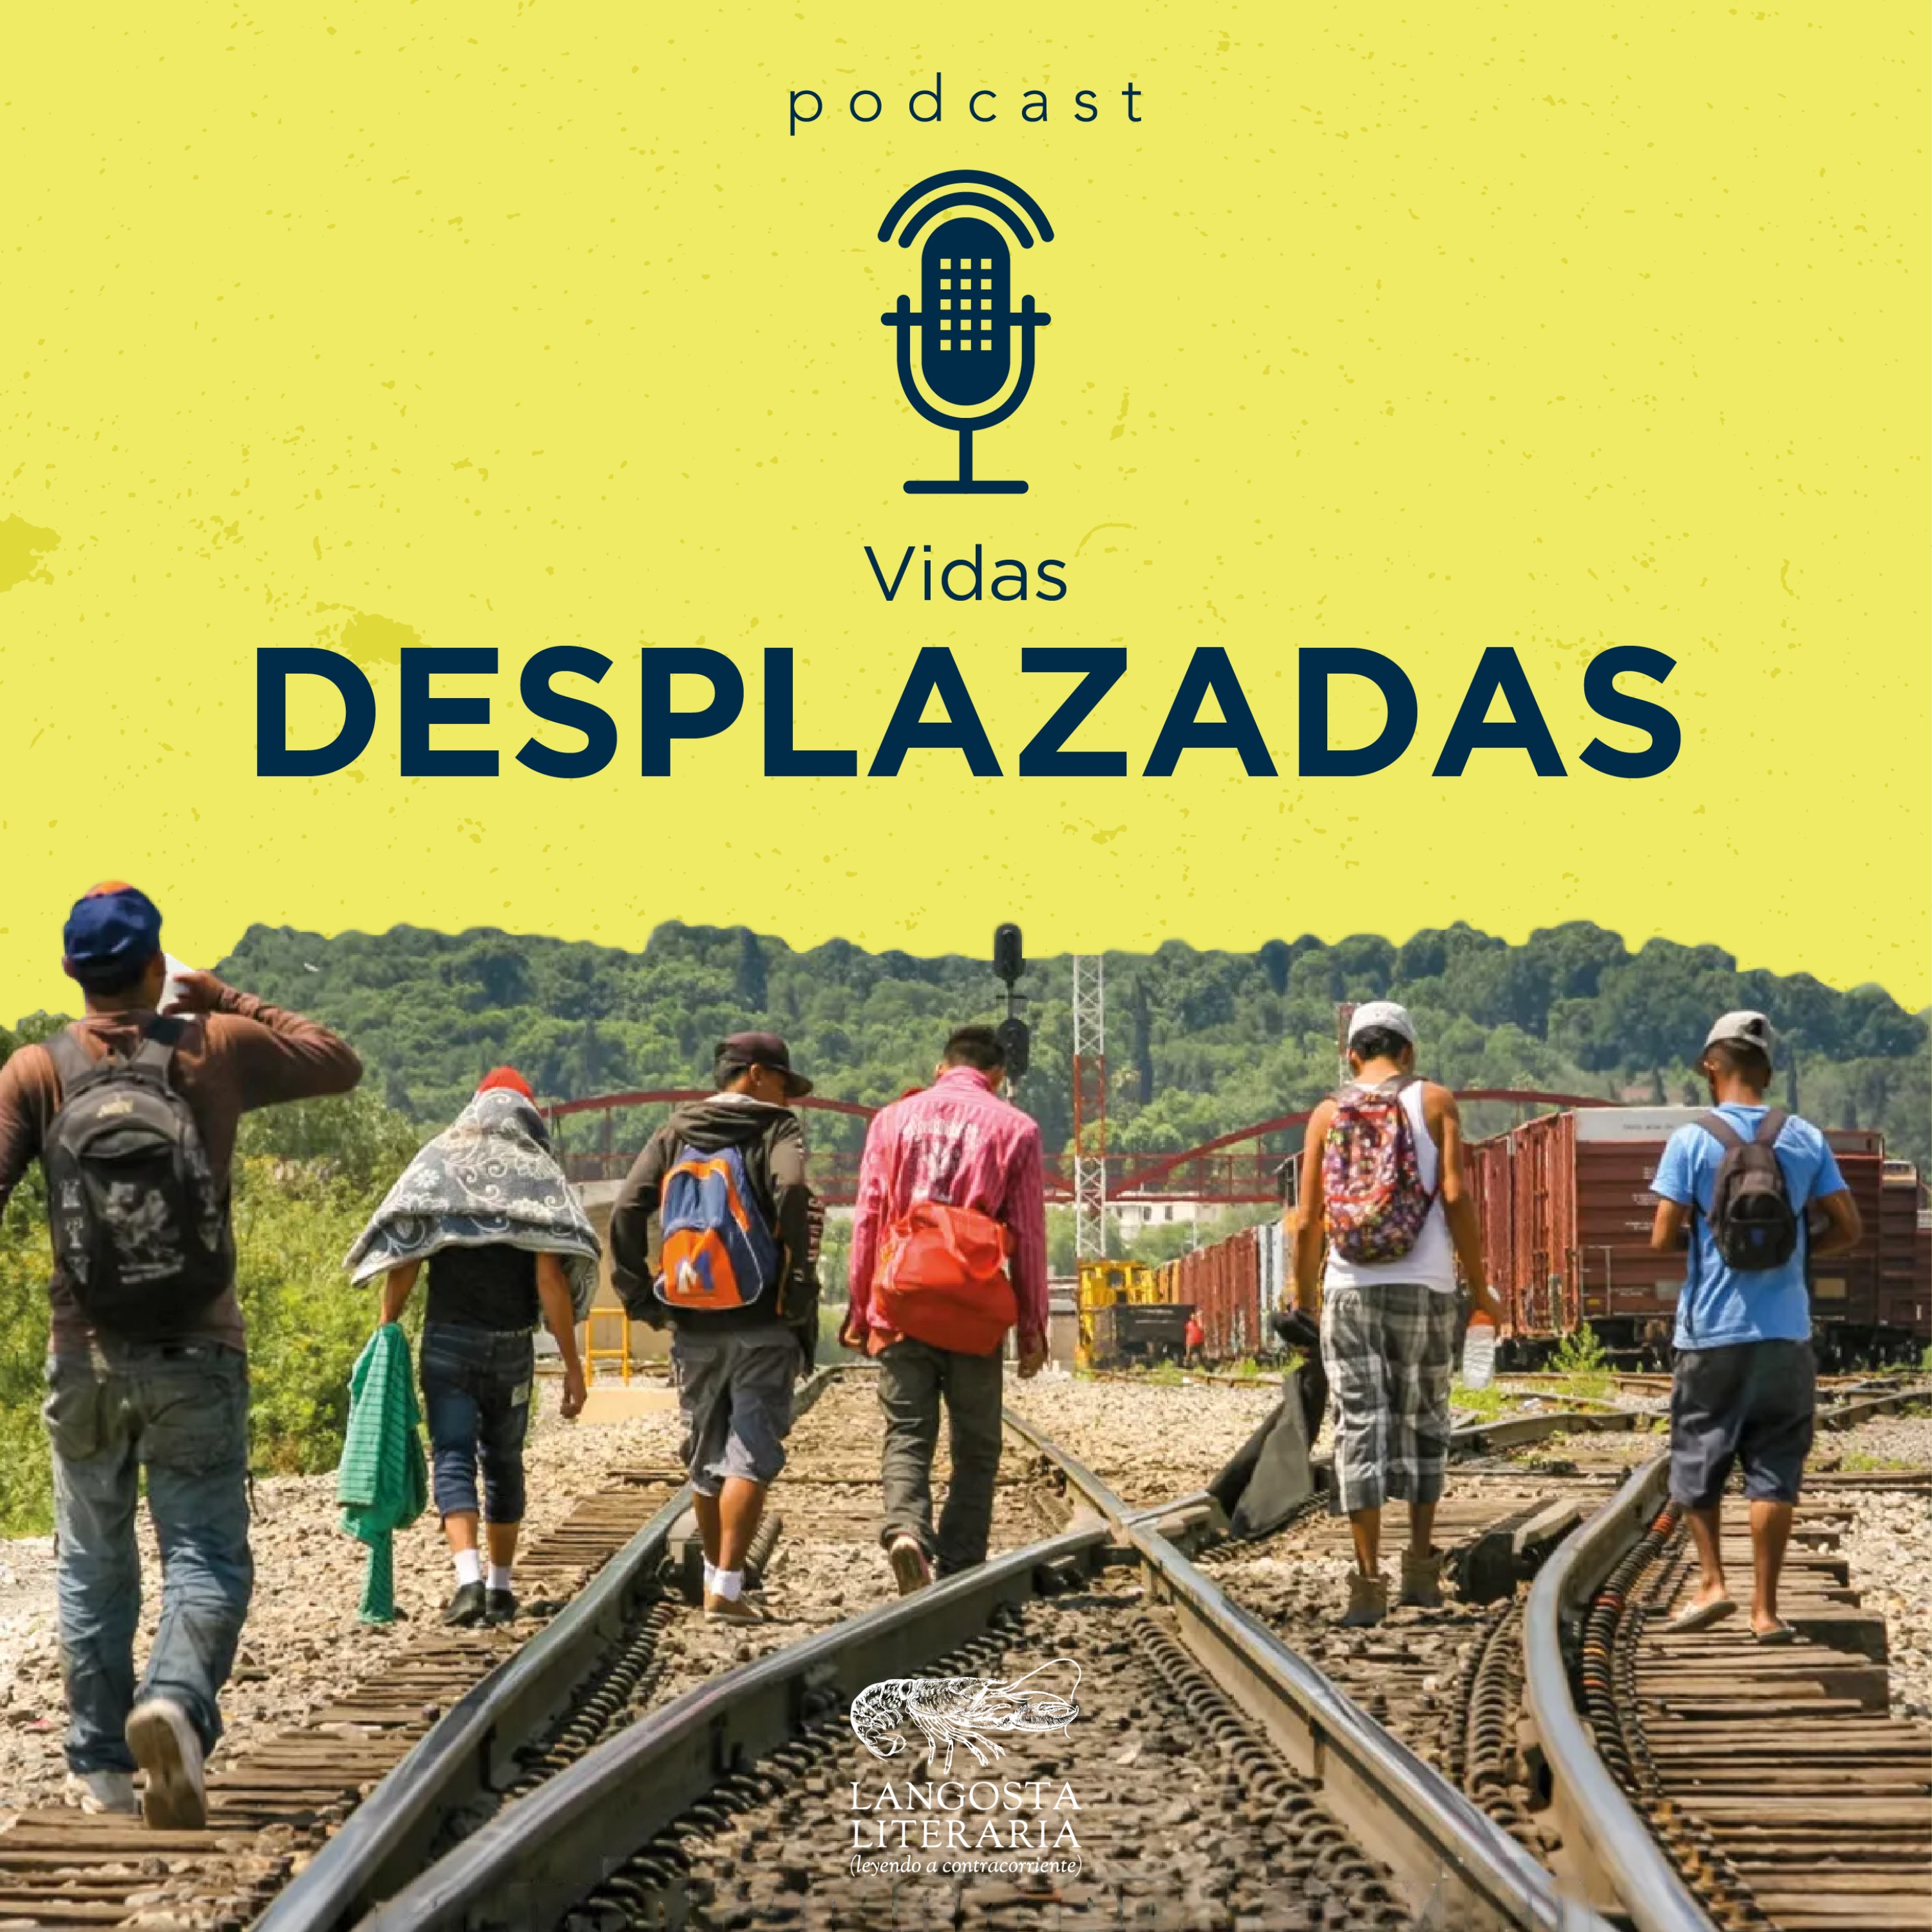 Vidas desplazadas: la migración en México